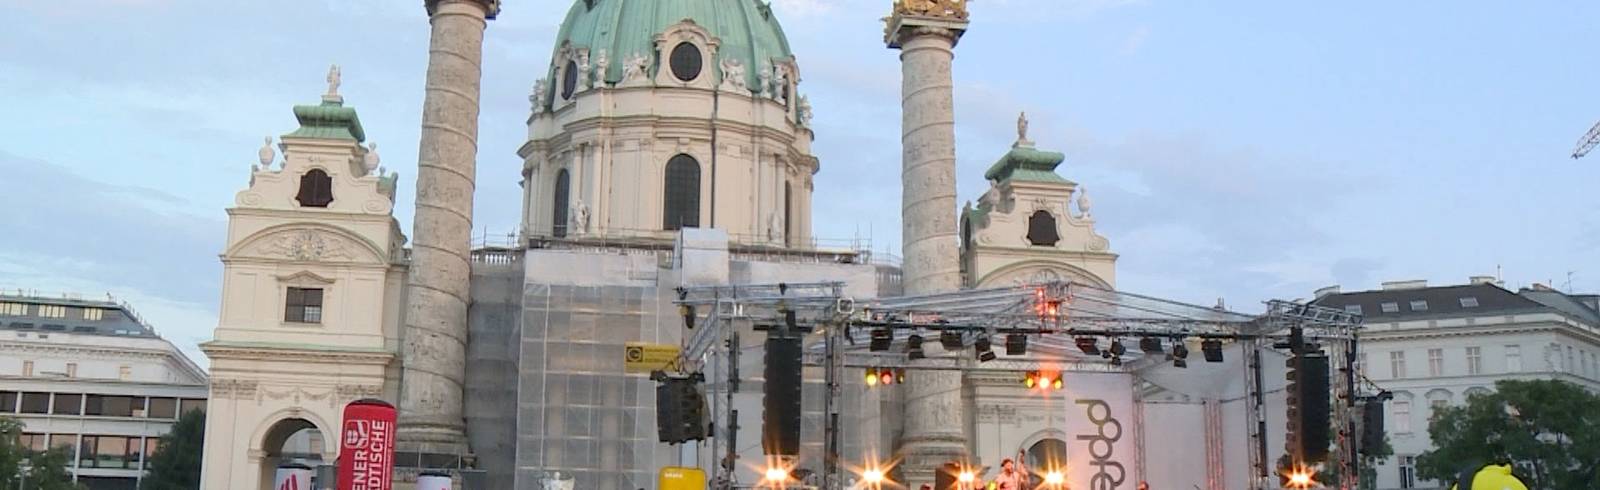 Popfest Wien: 58.000 Besucher sorgen für gute Stimmung